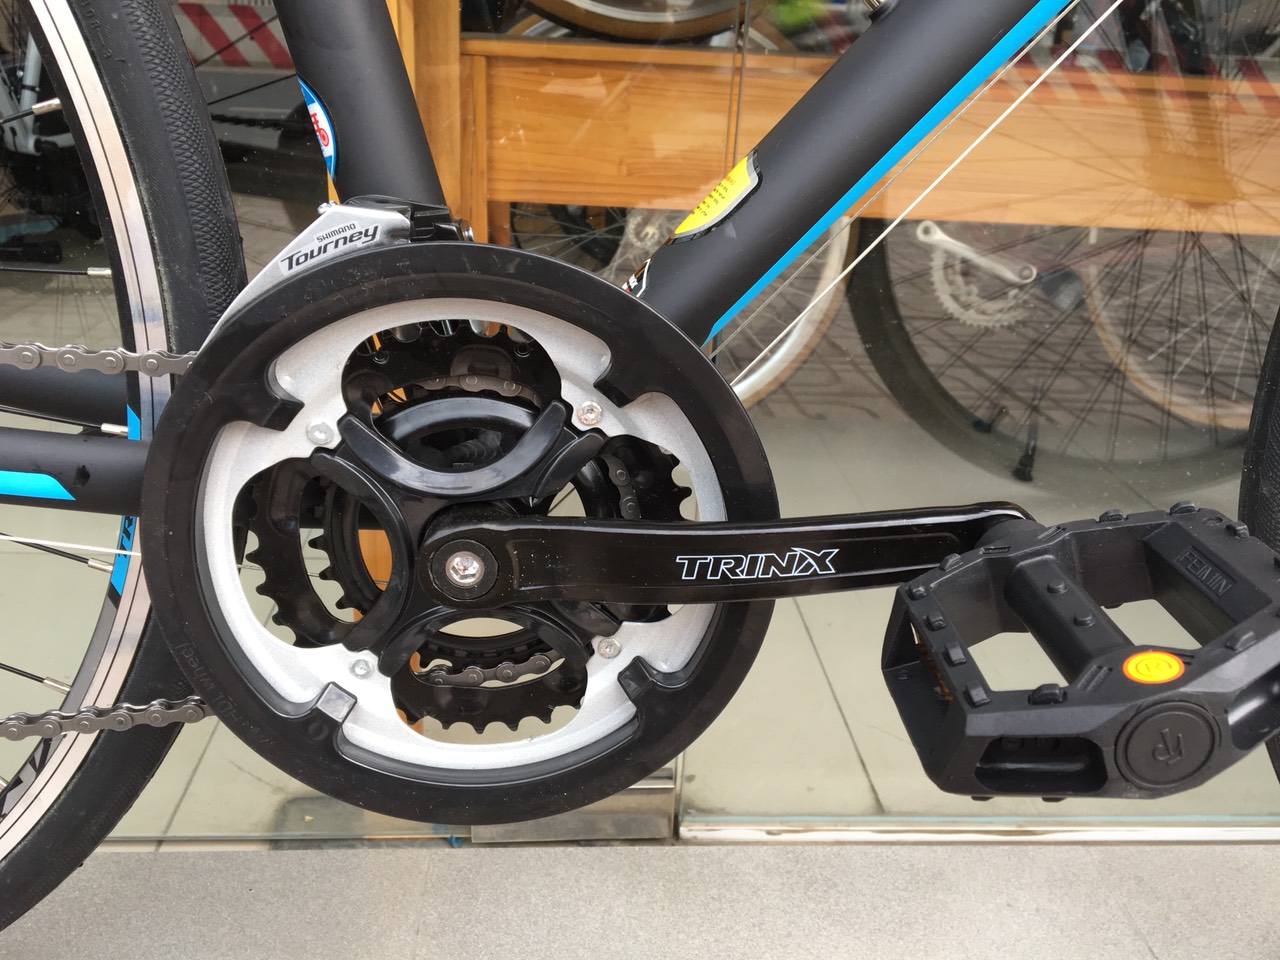 Xe đạp thể thao TRINX FREE 1.0 2019 Black Blue